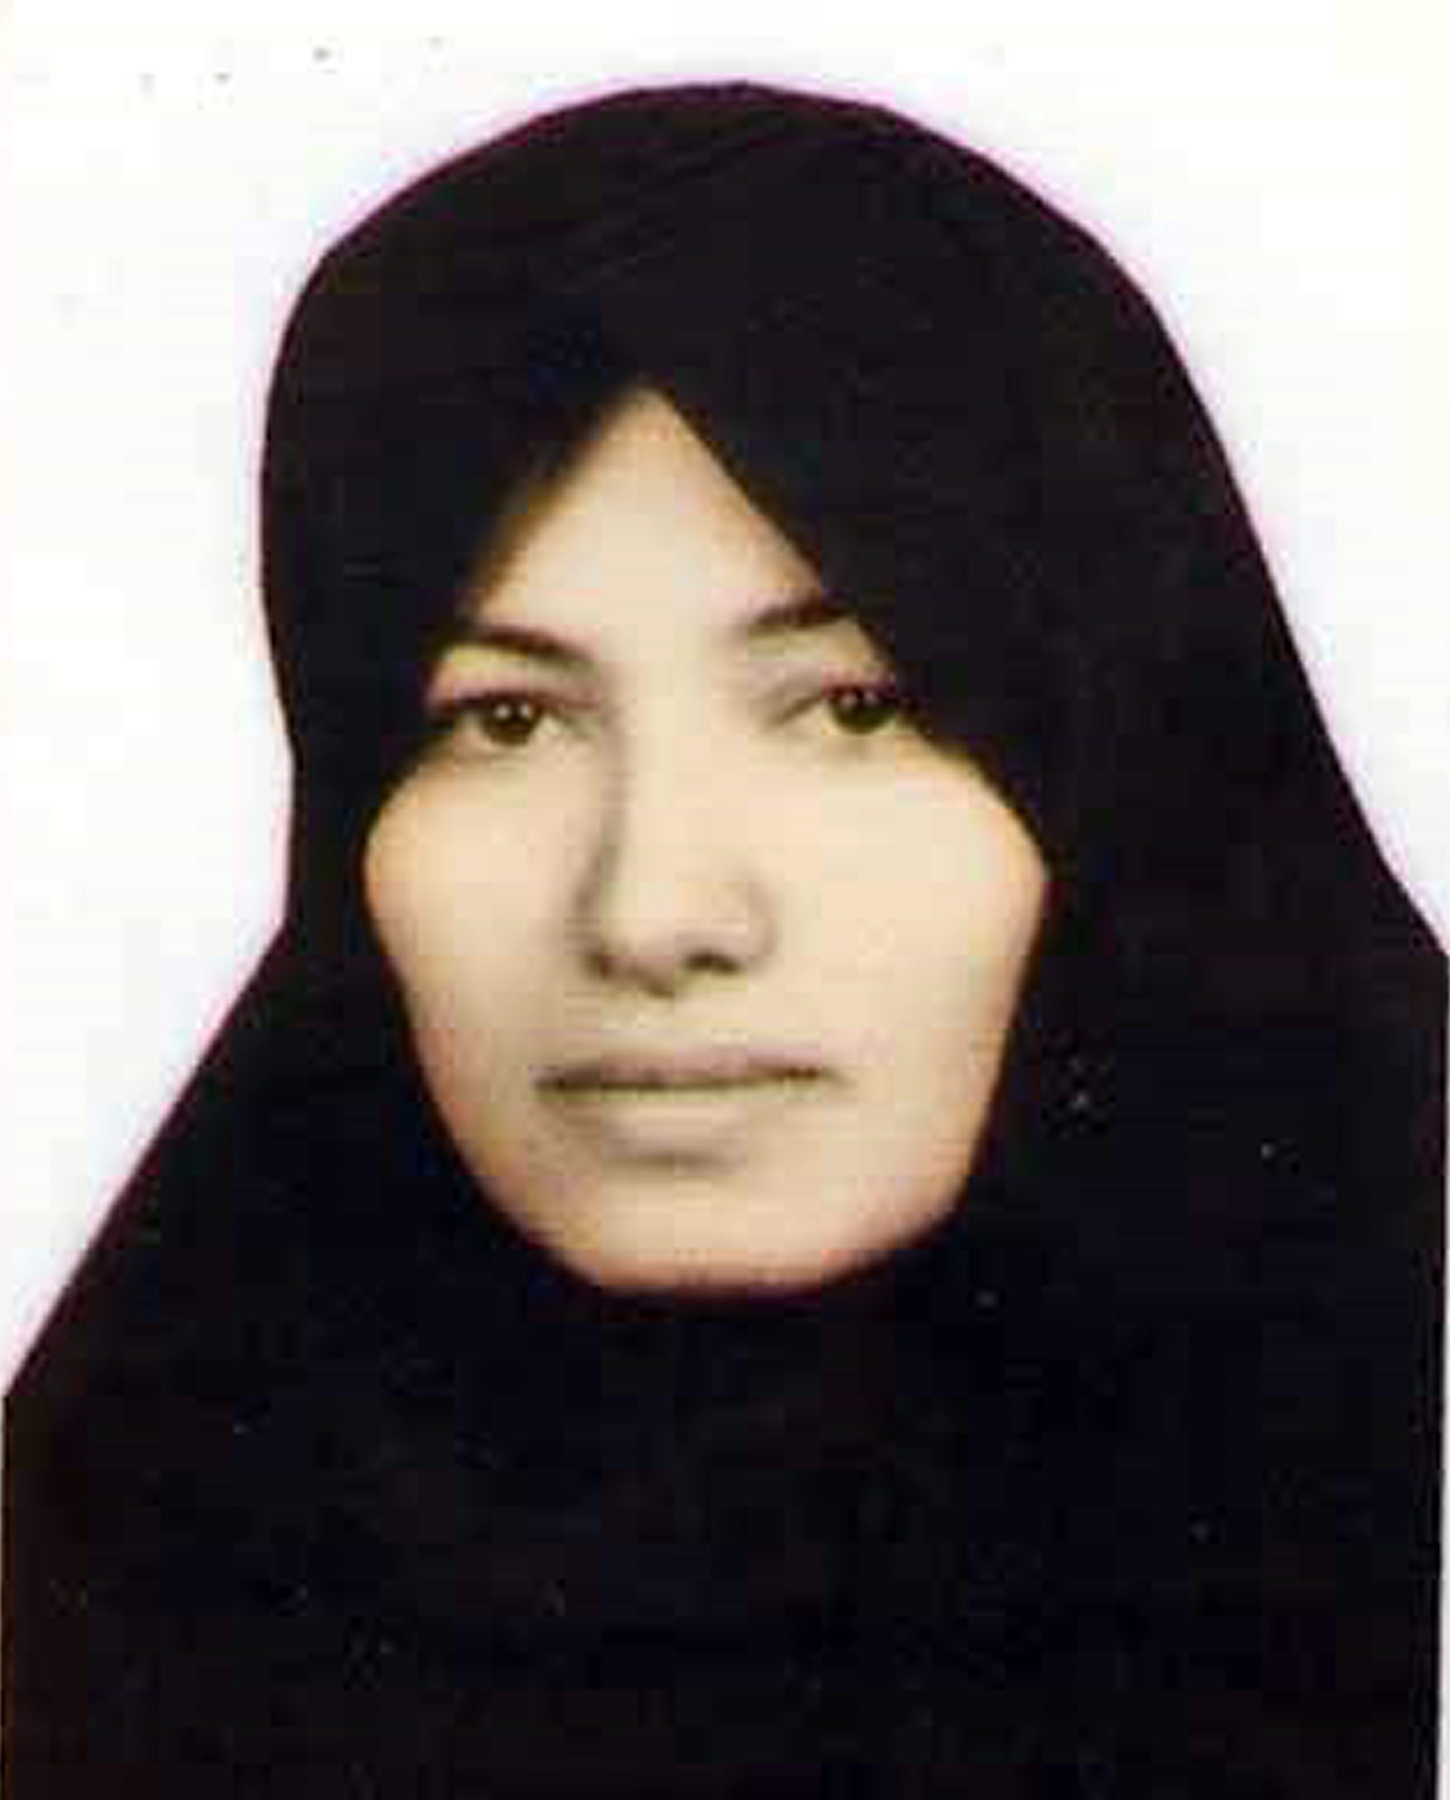 Avrattning, Brott och straff, Stening, Iran, Kvinna